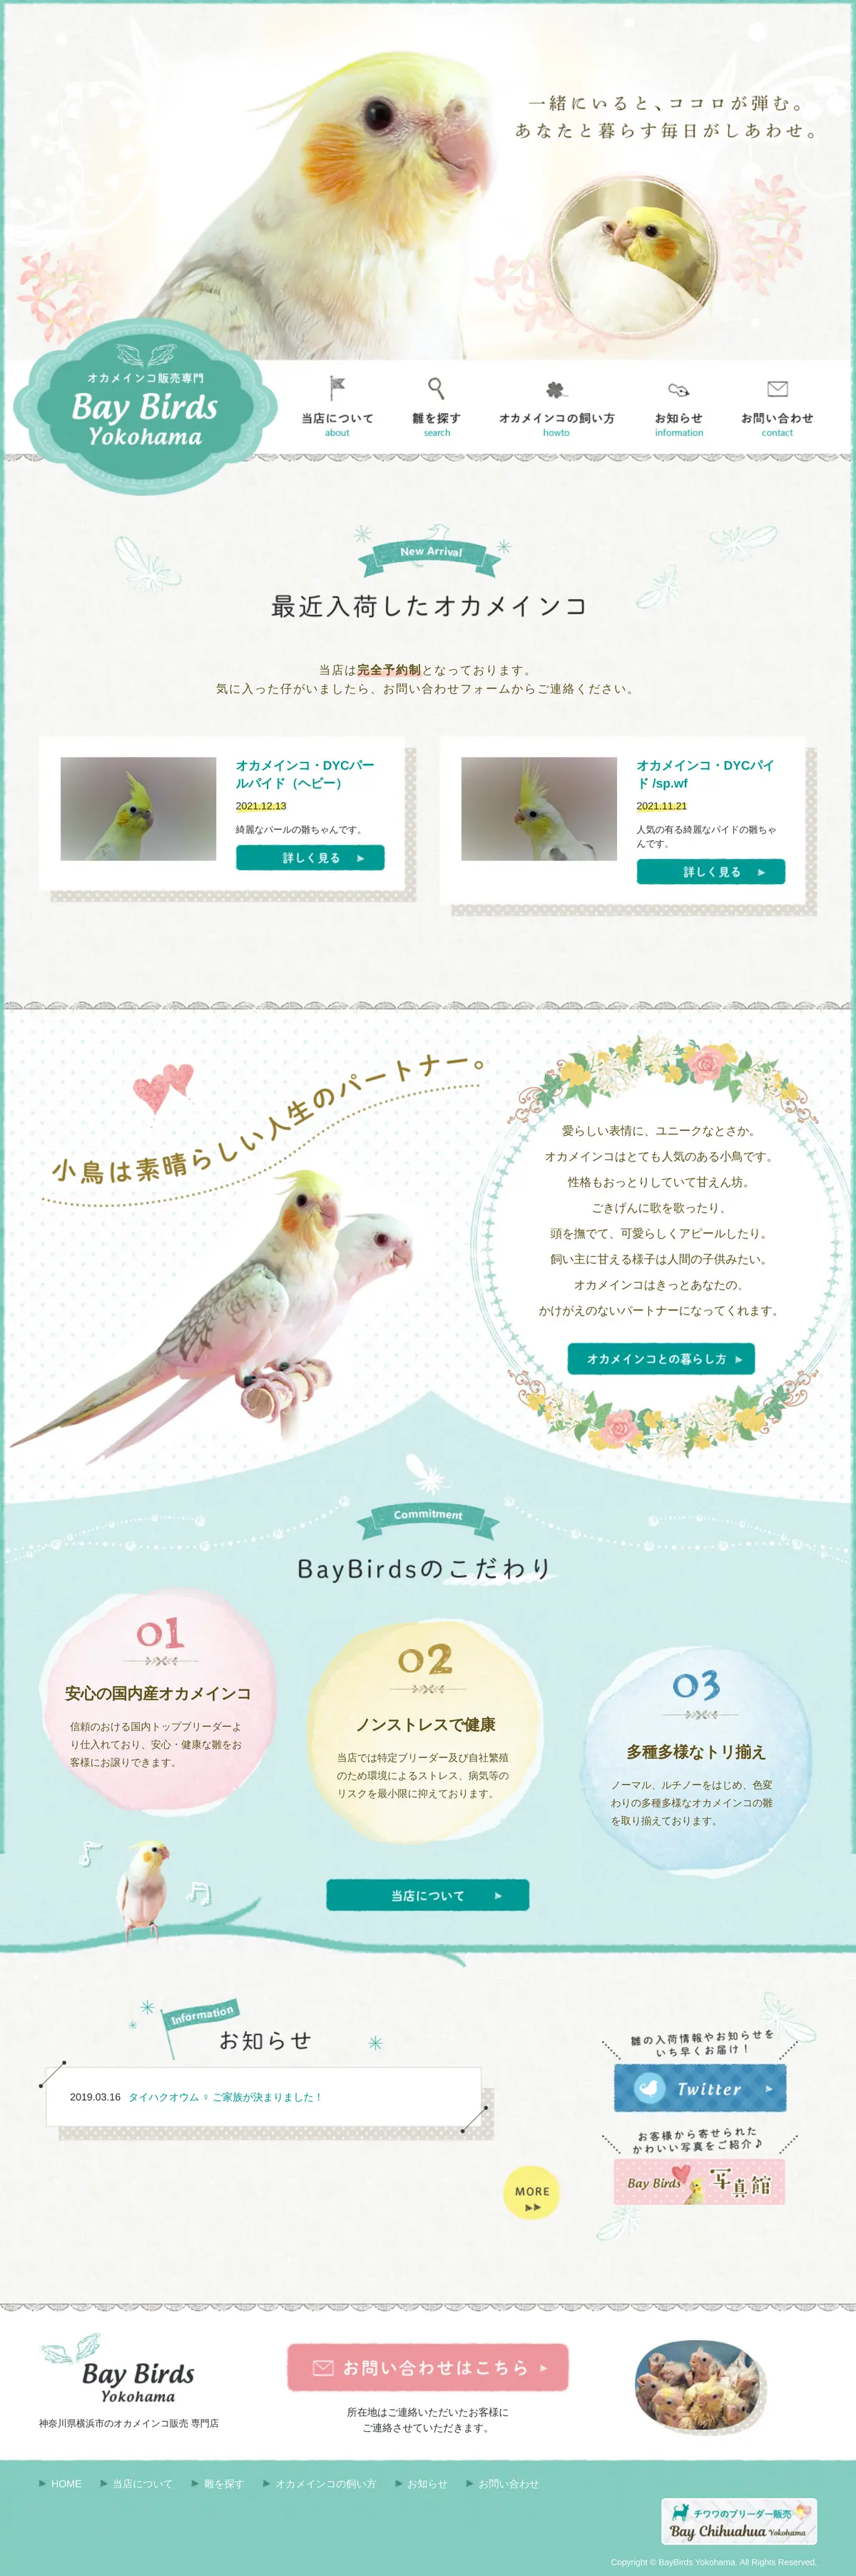 キャプチャ画面 会社名:ベイバードヨコハマプロジェクト名:Bay Birds Yokohama 画面名:全国トップ デバイス名:SPカテゴリ:動物・ペットタグ:全国トップ,SP